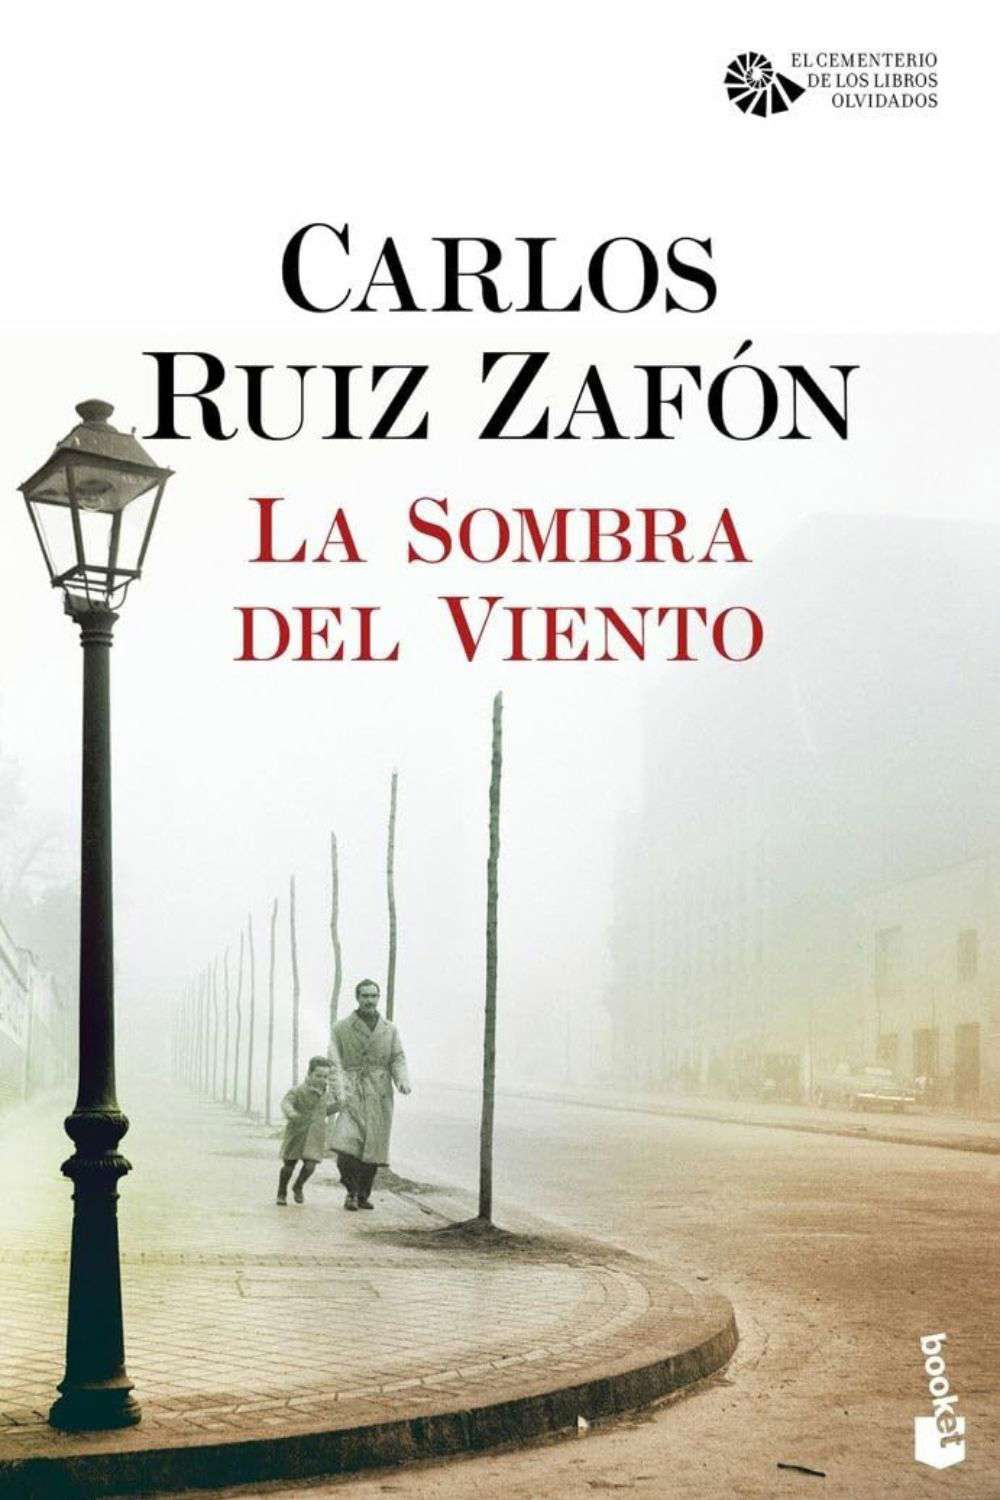 'La sombra del viento' de Carlos Ruiz Zafón